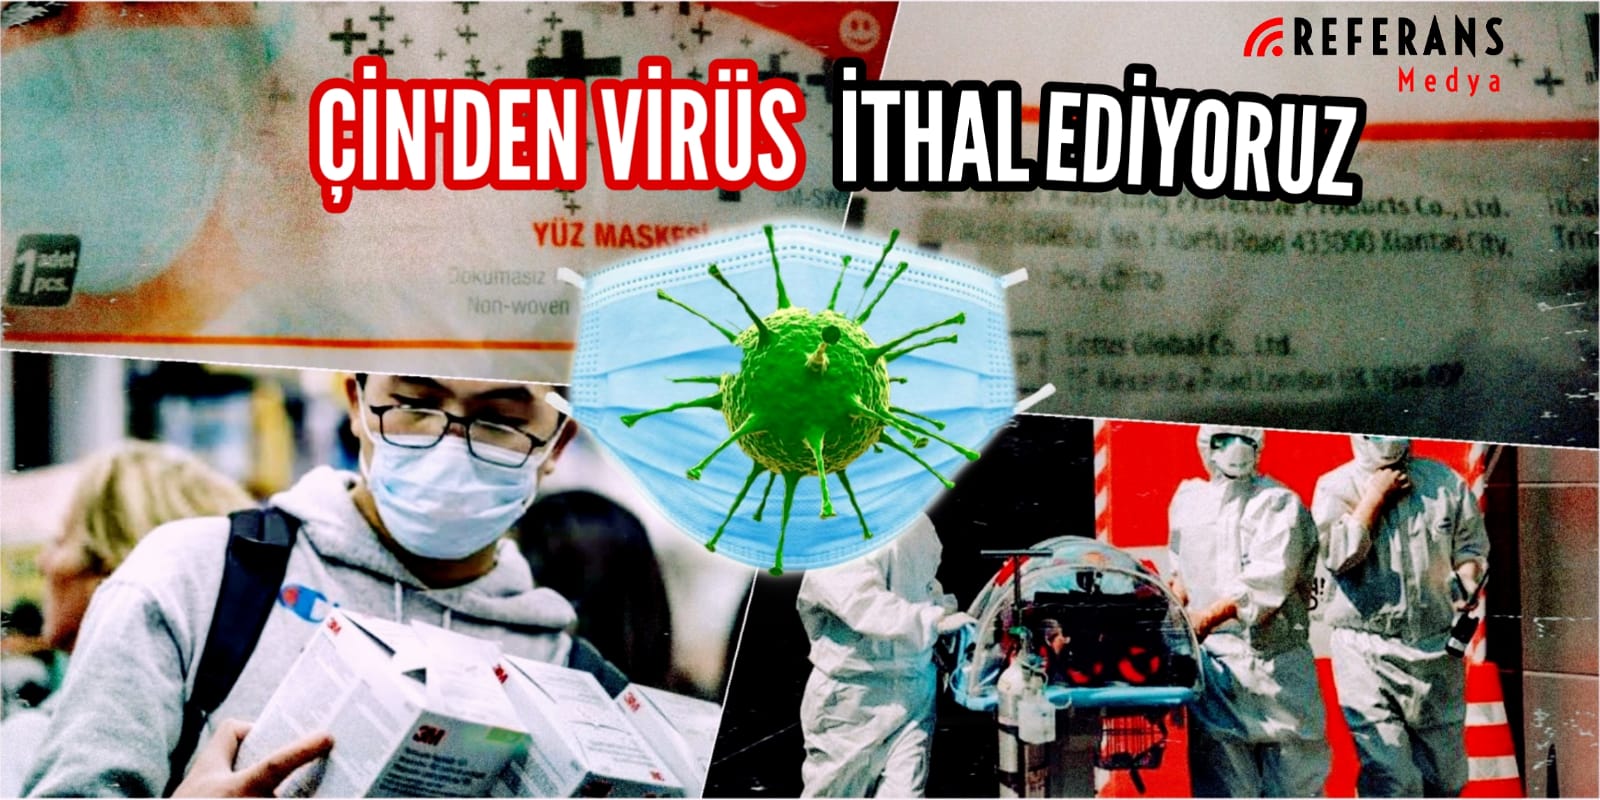 Çin’den virüs ithal ediyoruz